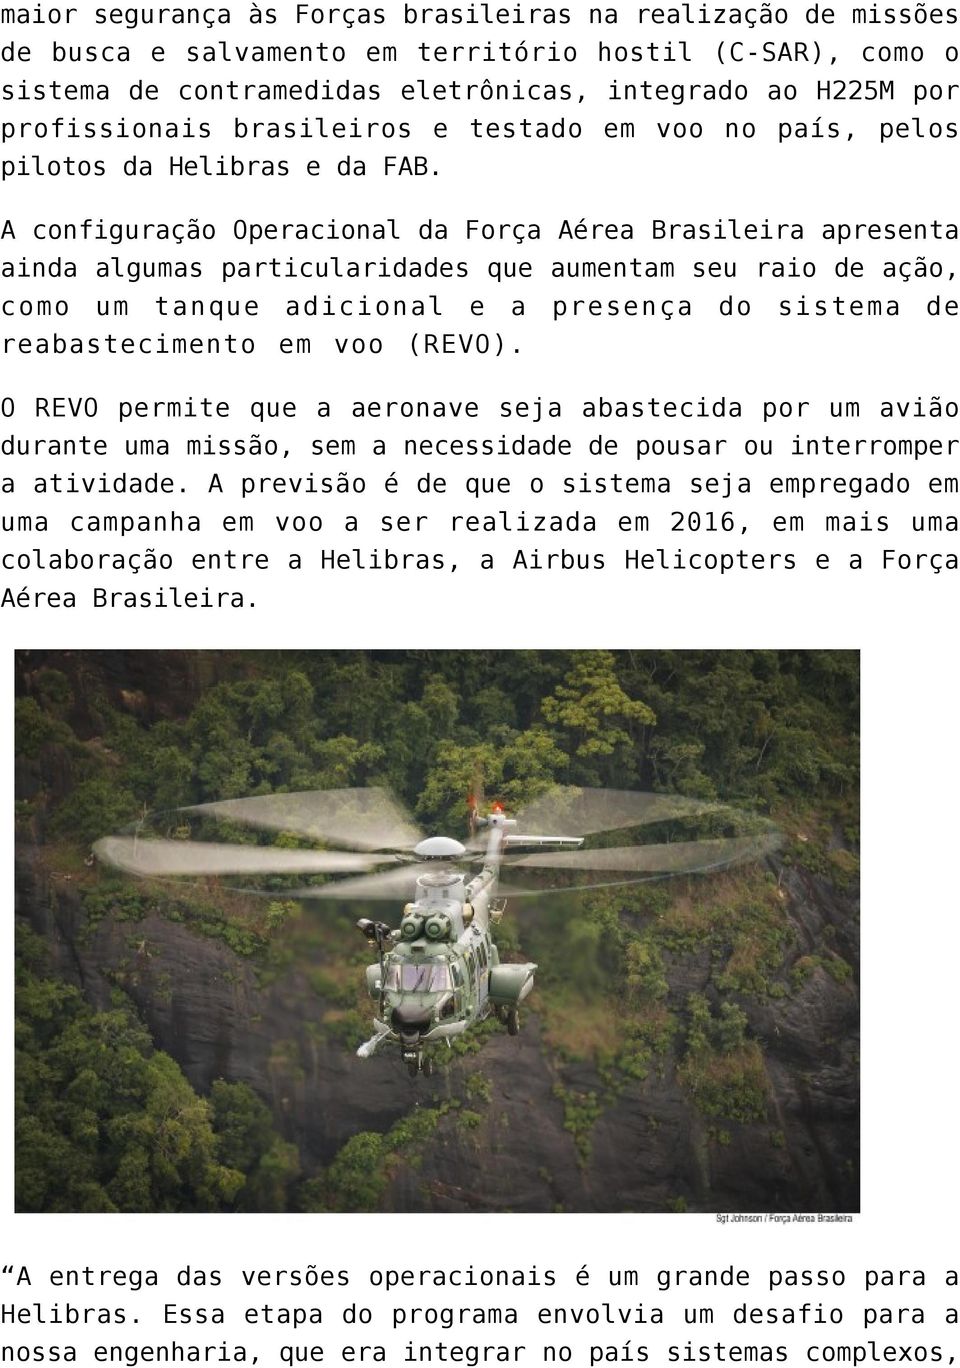 A configuração Operacional da Força Aérea Brasileira apresenta ainda algumas particularidades que aumentam seu raio de ação, como um tanque adicional e a presença do sistema de reabastecimento em voo